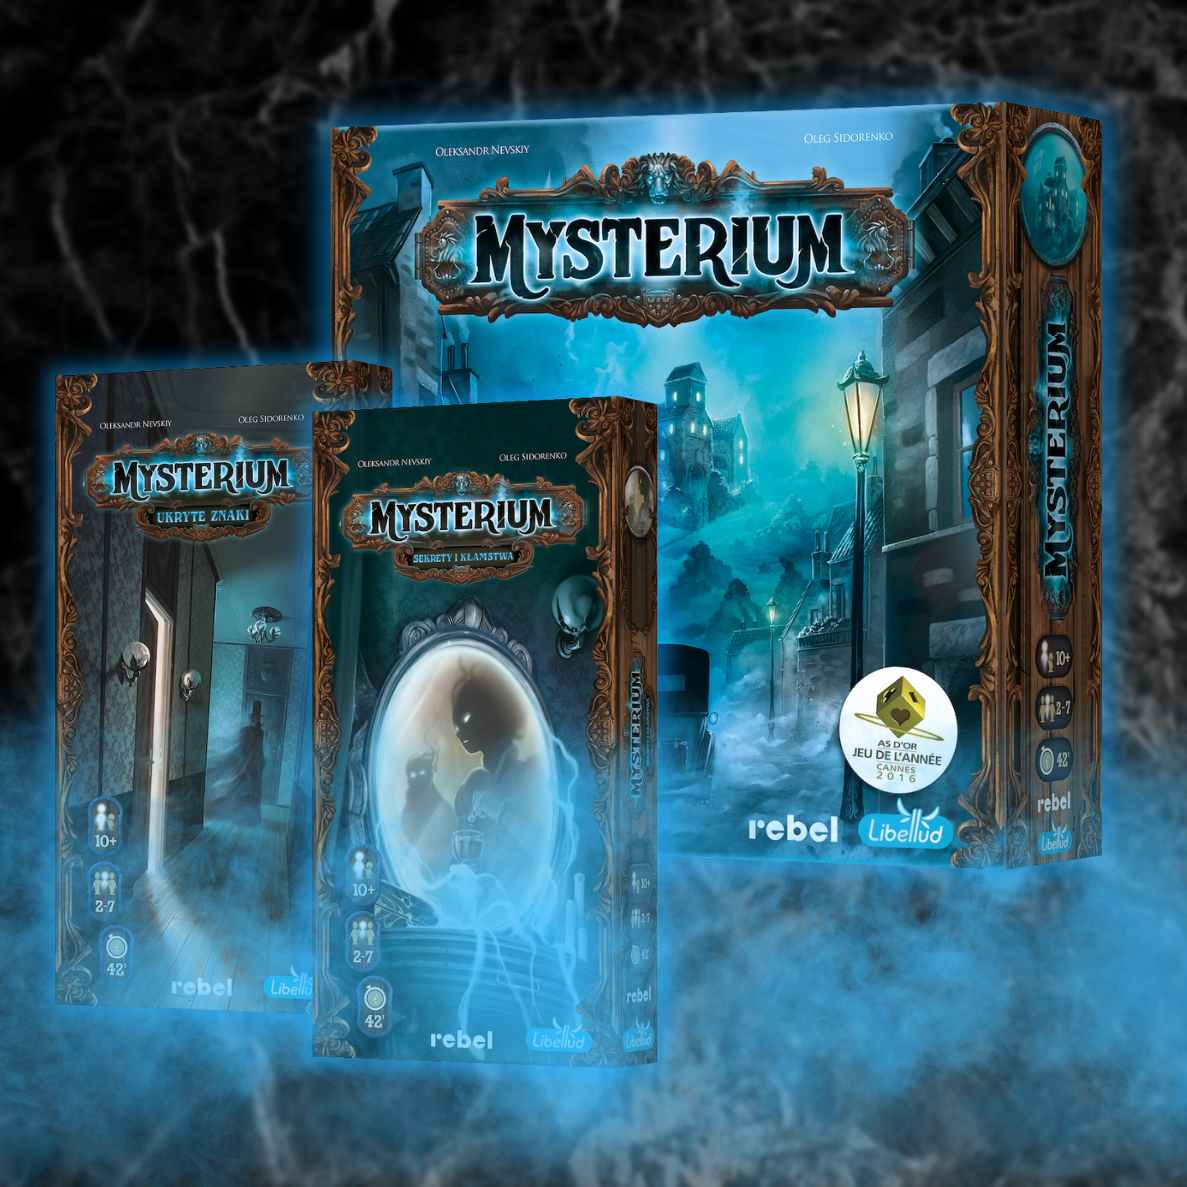 Mysterium - pudełko gry podstawowej oraz dodatków